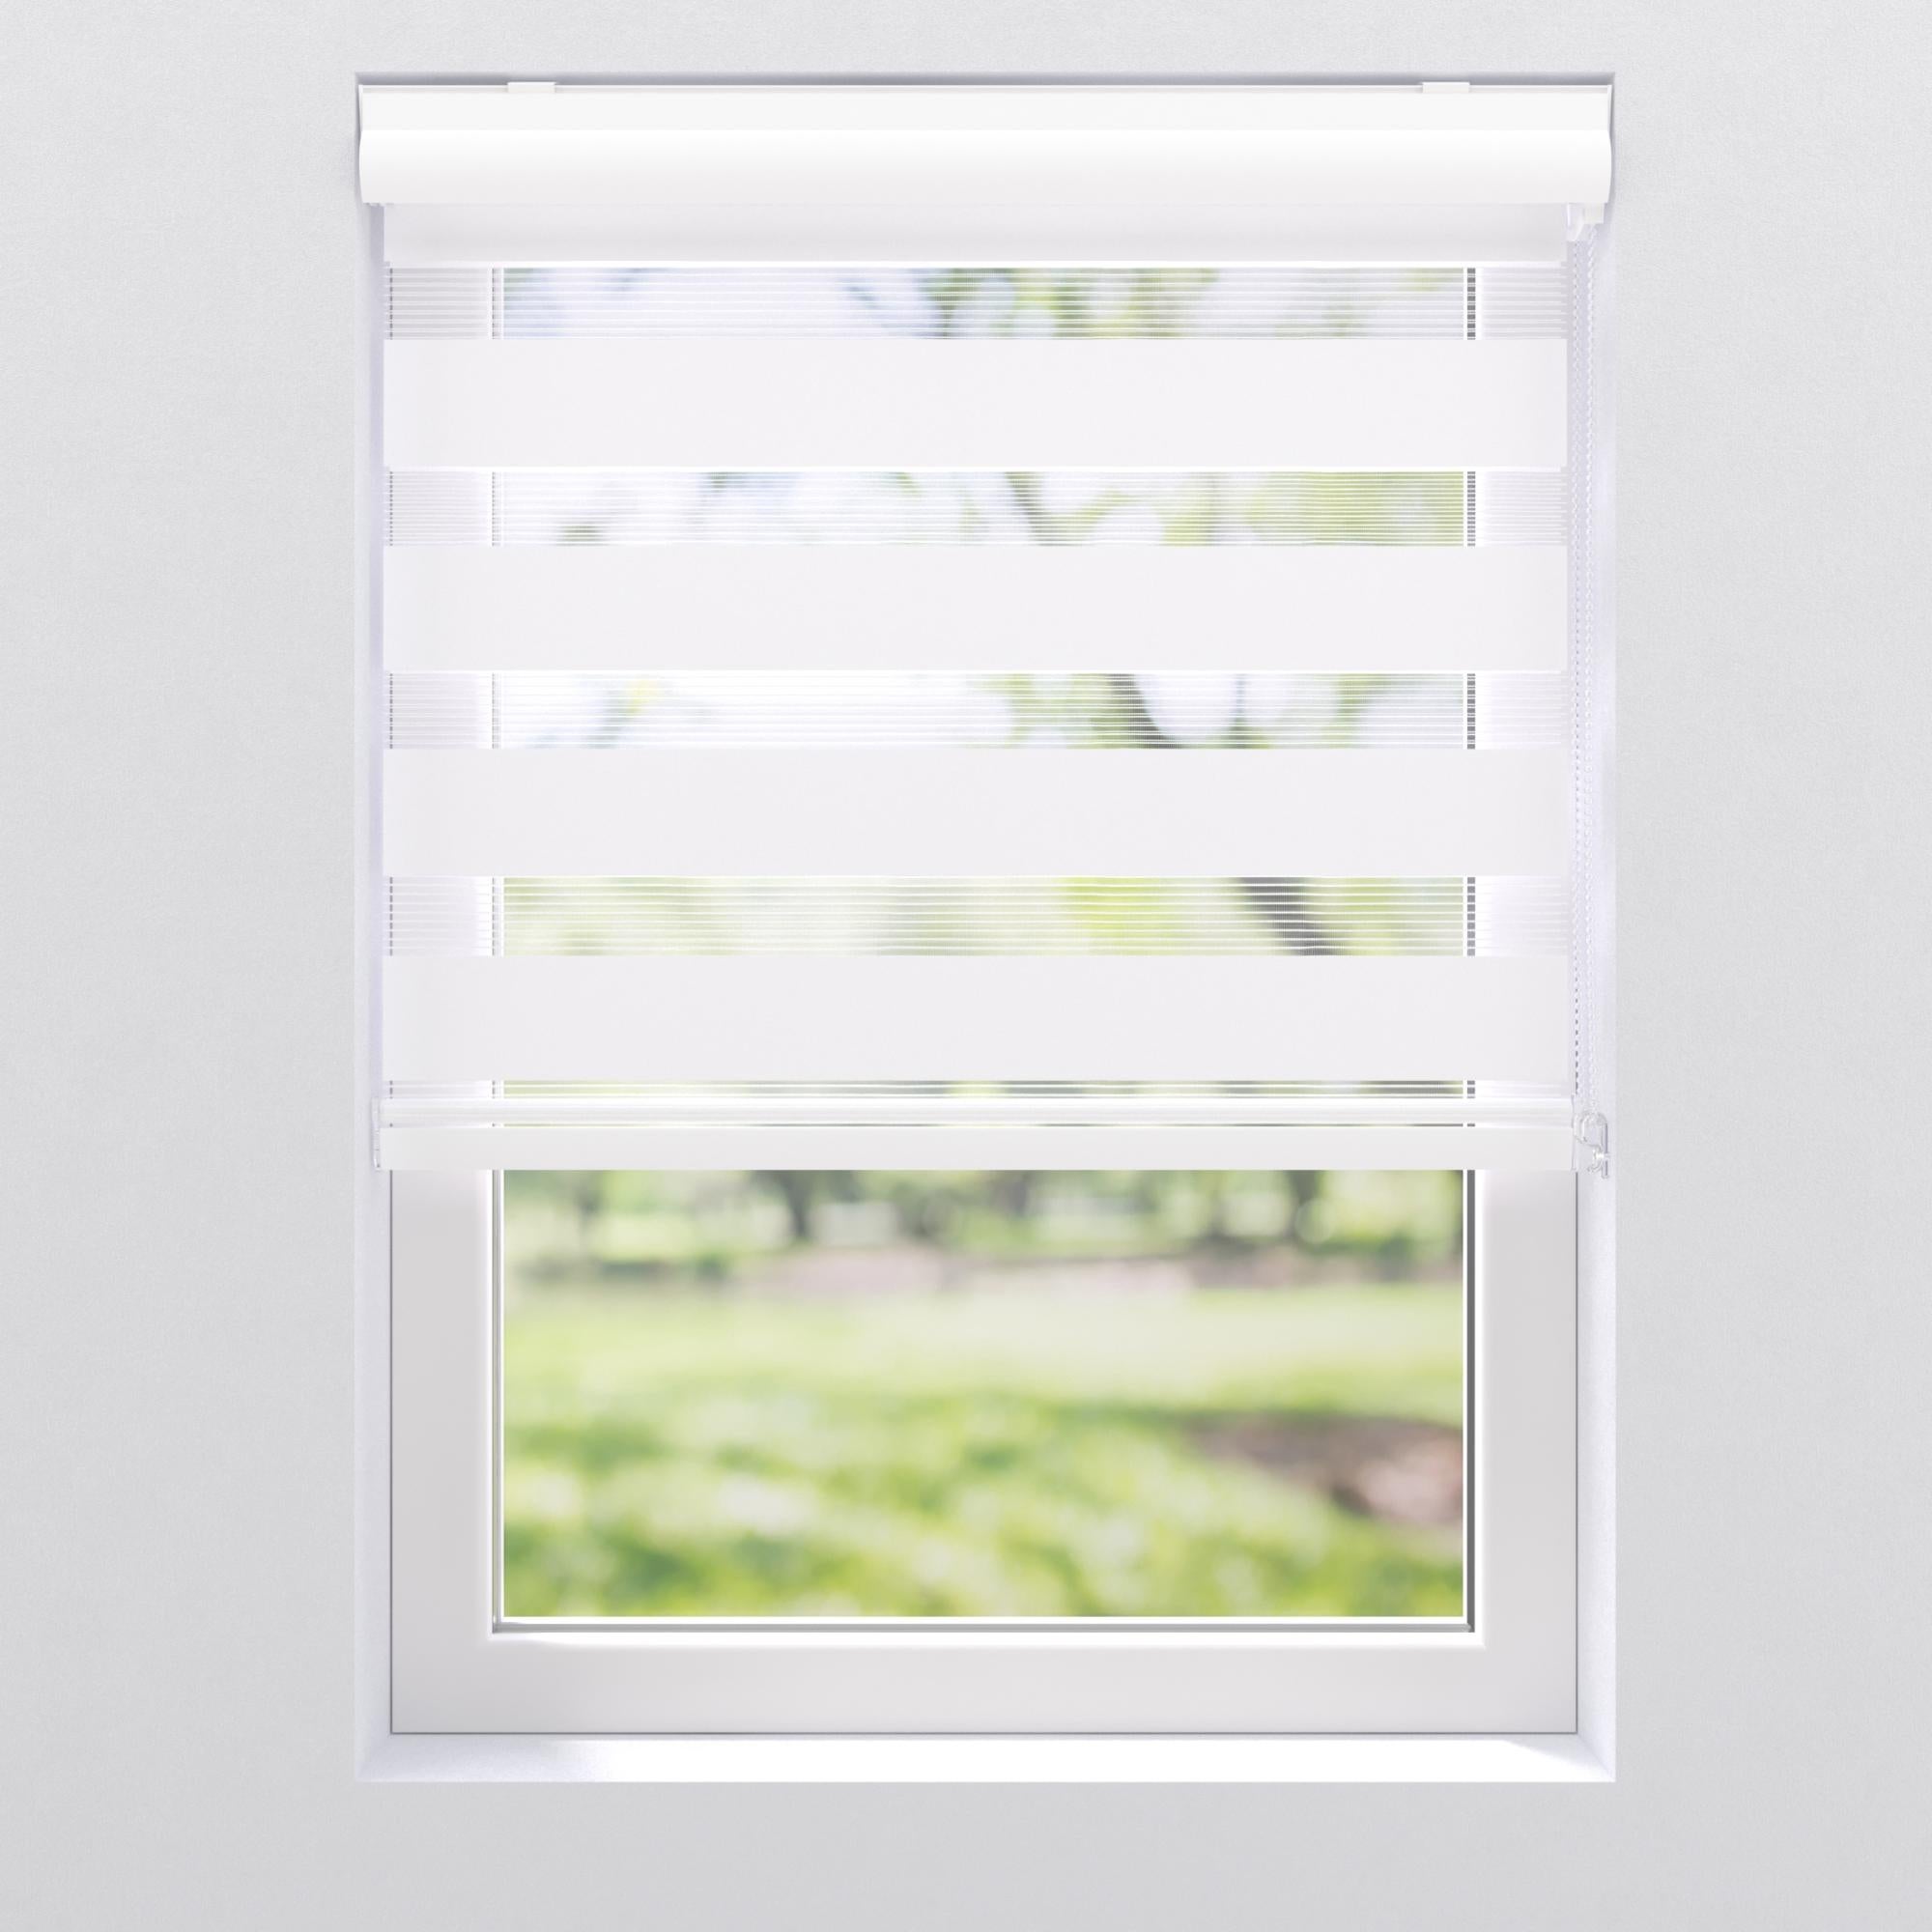 Facile à Installer avec Clips pour Fenêtre ou Porte Store Enrouleur Jour Nuit sans Perçage 50 x 130 cm Blanc